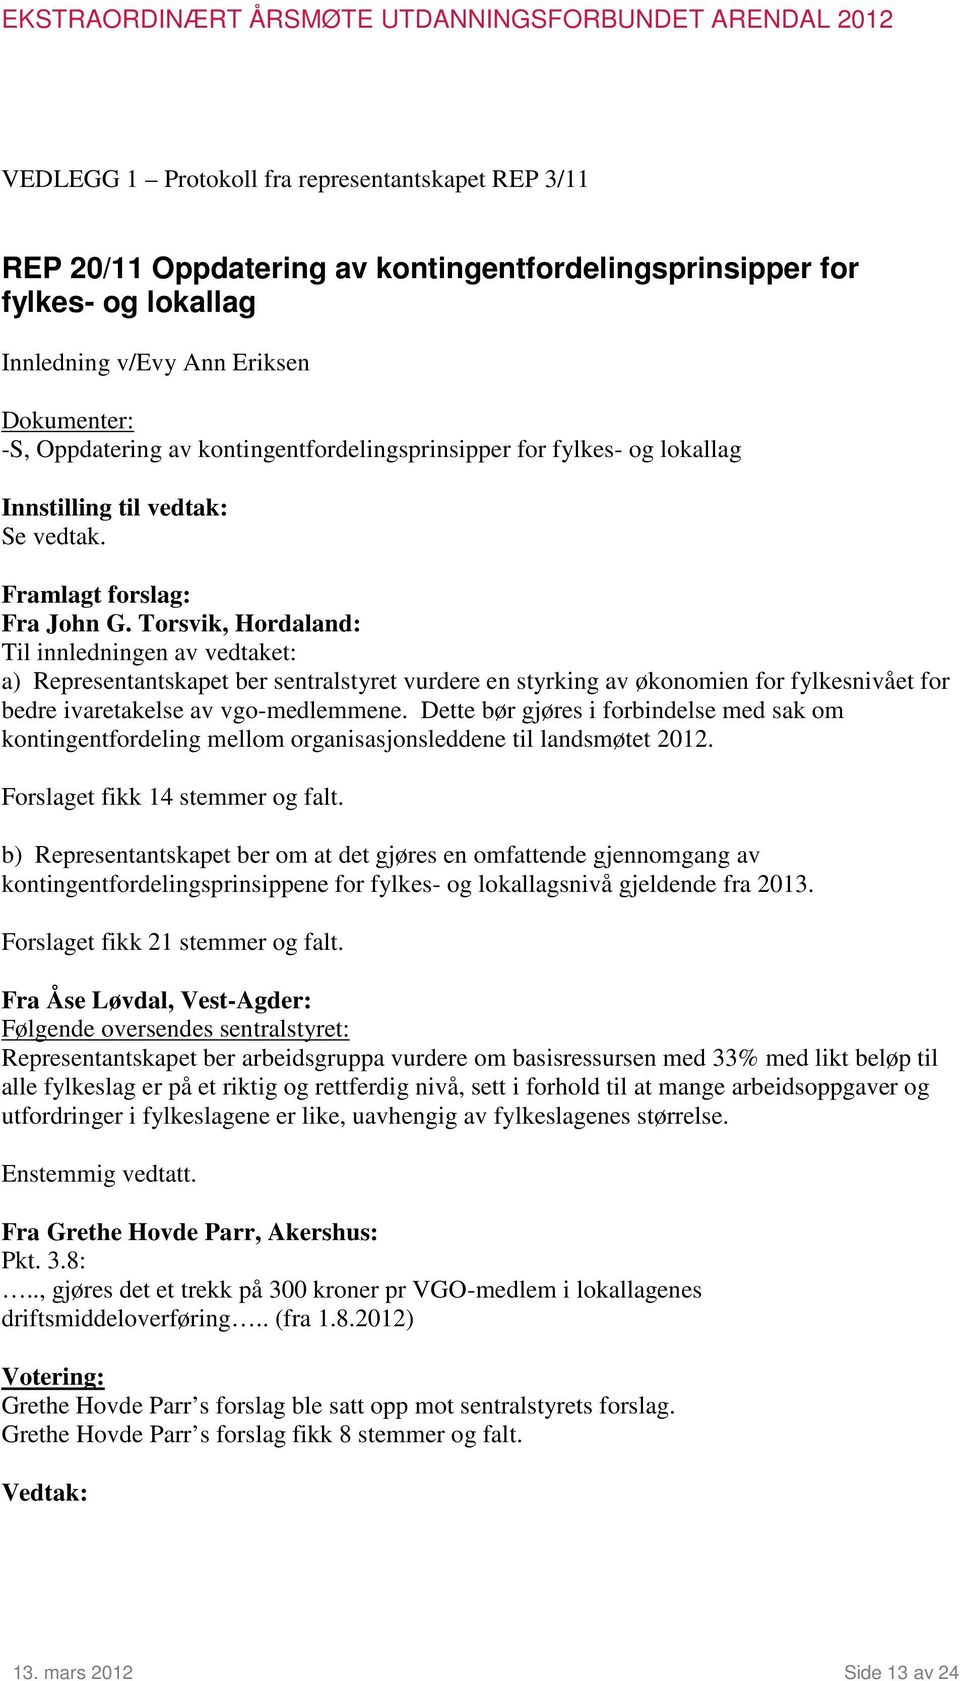 Torsvik, Hordaland: Til innledningen av vedtaket: a) Representantskapet ber sentralstyret vurdere en styrking av økonomien for fylkesnivået for bedre ivaretakelse av vgo-medlemmene.